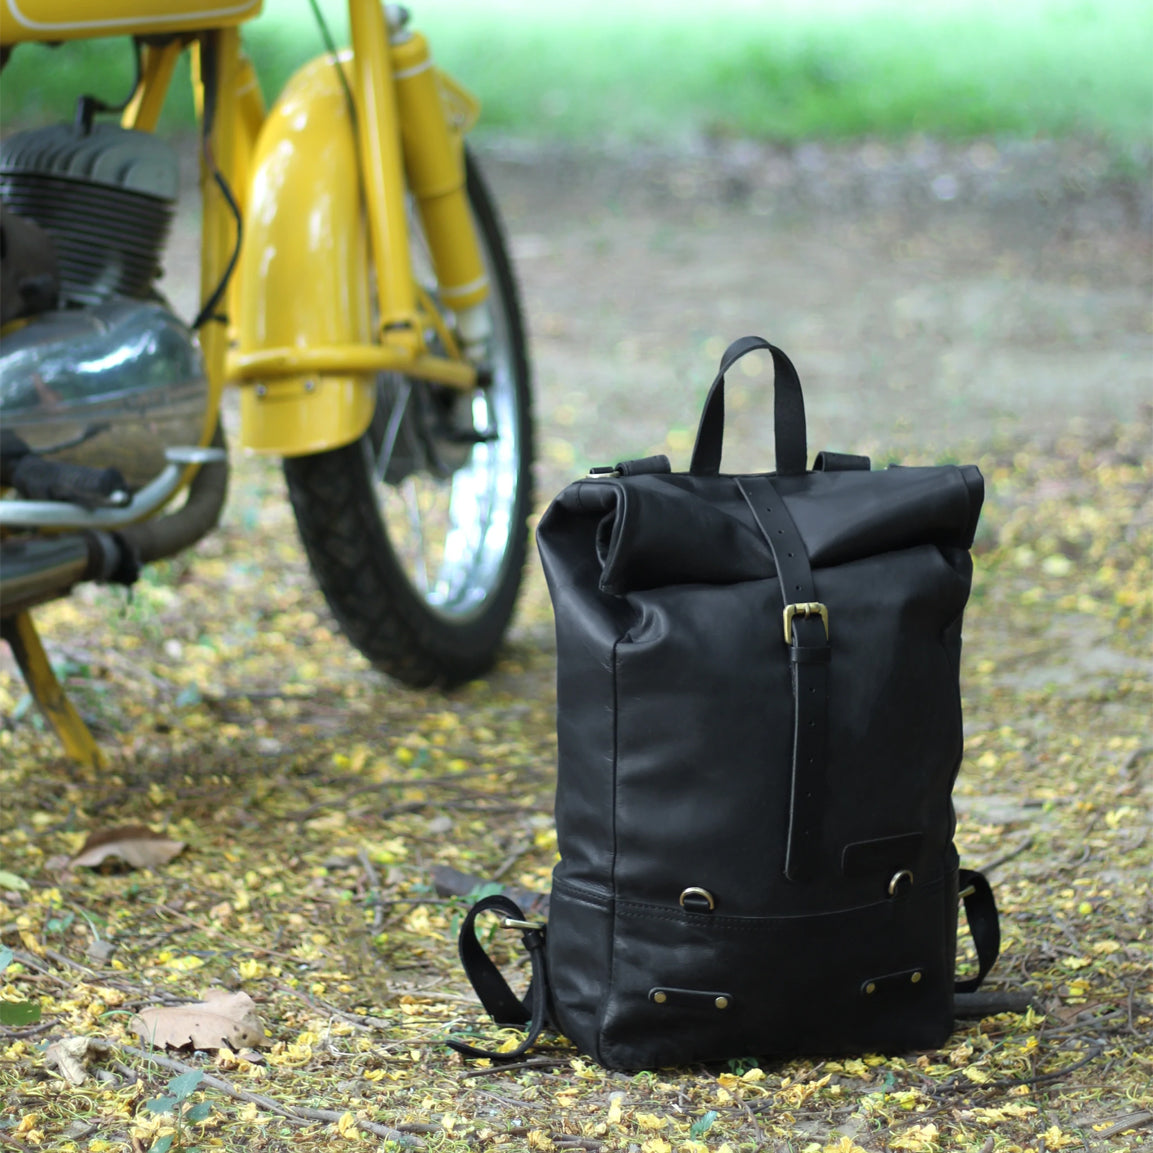 Trip Machine Backpack Pannier Classic - black. Klassische Motorrad-Gepäcktasche aus schwarzem Leder im Retro-/Vintage-Stil, mit 15 Liter Volumen perfekt für einen Mehr-Tages Ausflug. Einfaches Montagesystem an nahezu jedem Motorrad möglich.